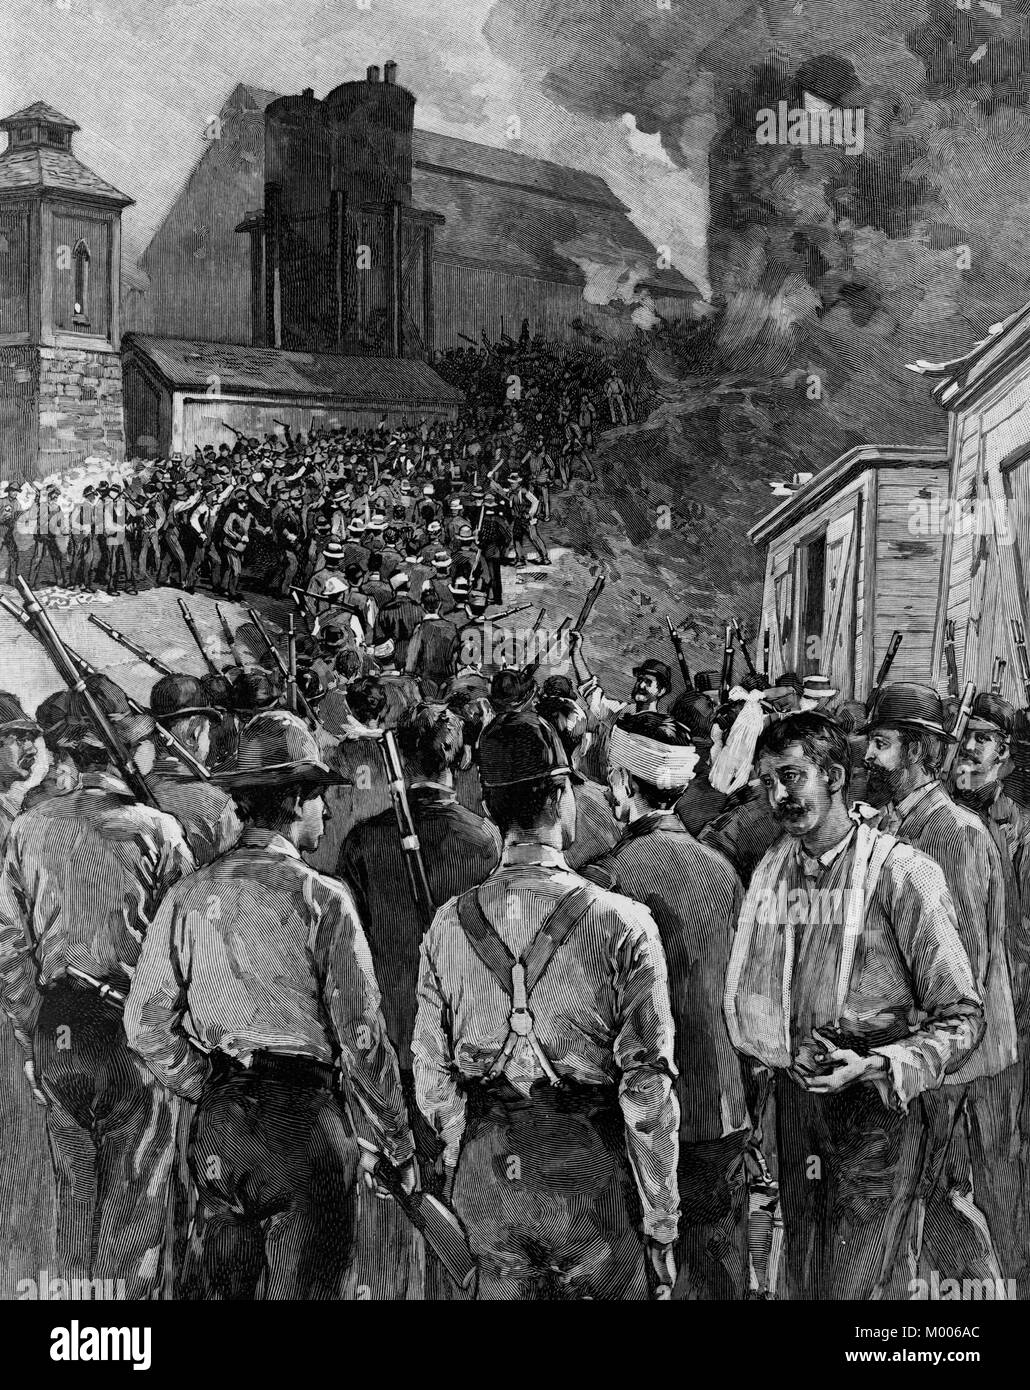 Agencia de Detectives Pinkerton hombres dejando las barcazas tras la rendición de los huelguistas durante la huelga de Homestead. Julio de 1892 Foto de stock